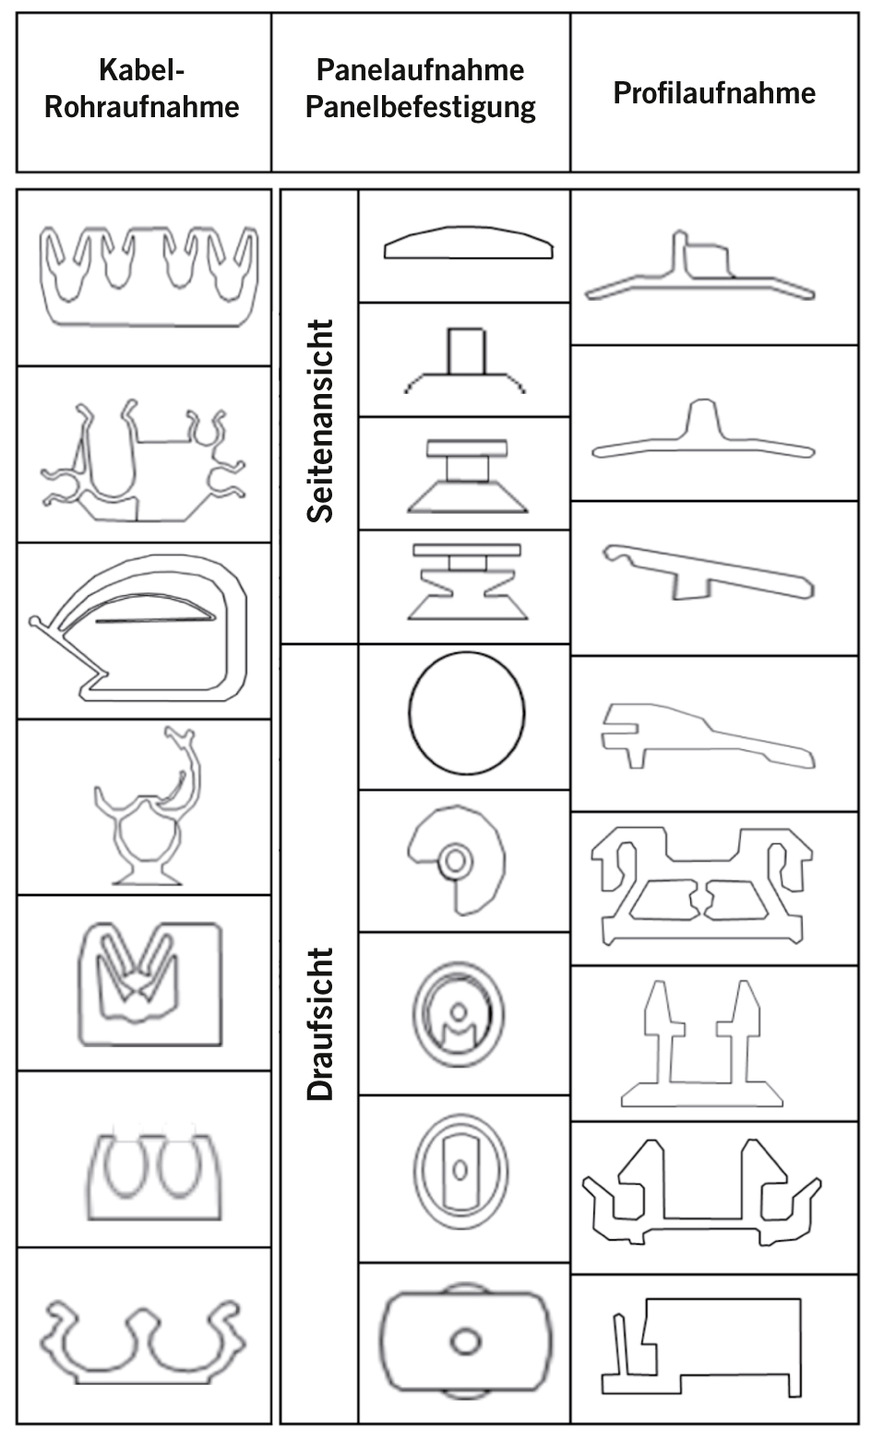 Abb. 2:  Klassifizierung der Kopfformen der Clipsverbindungen (eigene Darstellung)